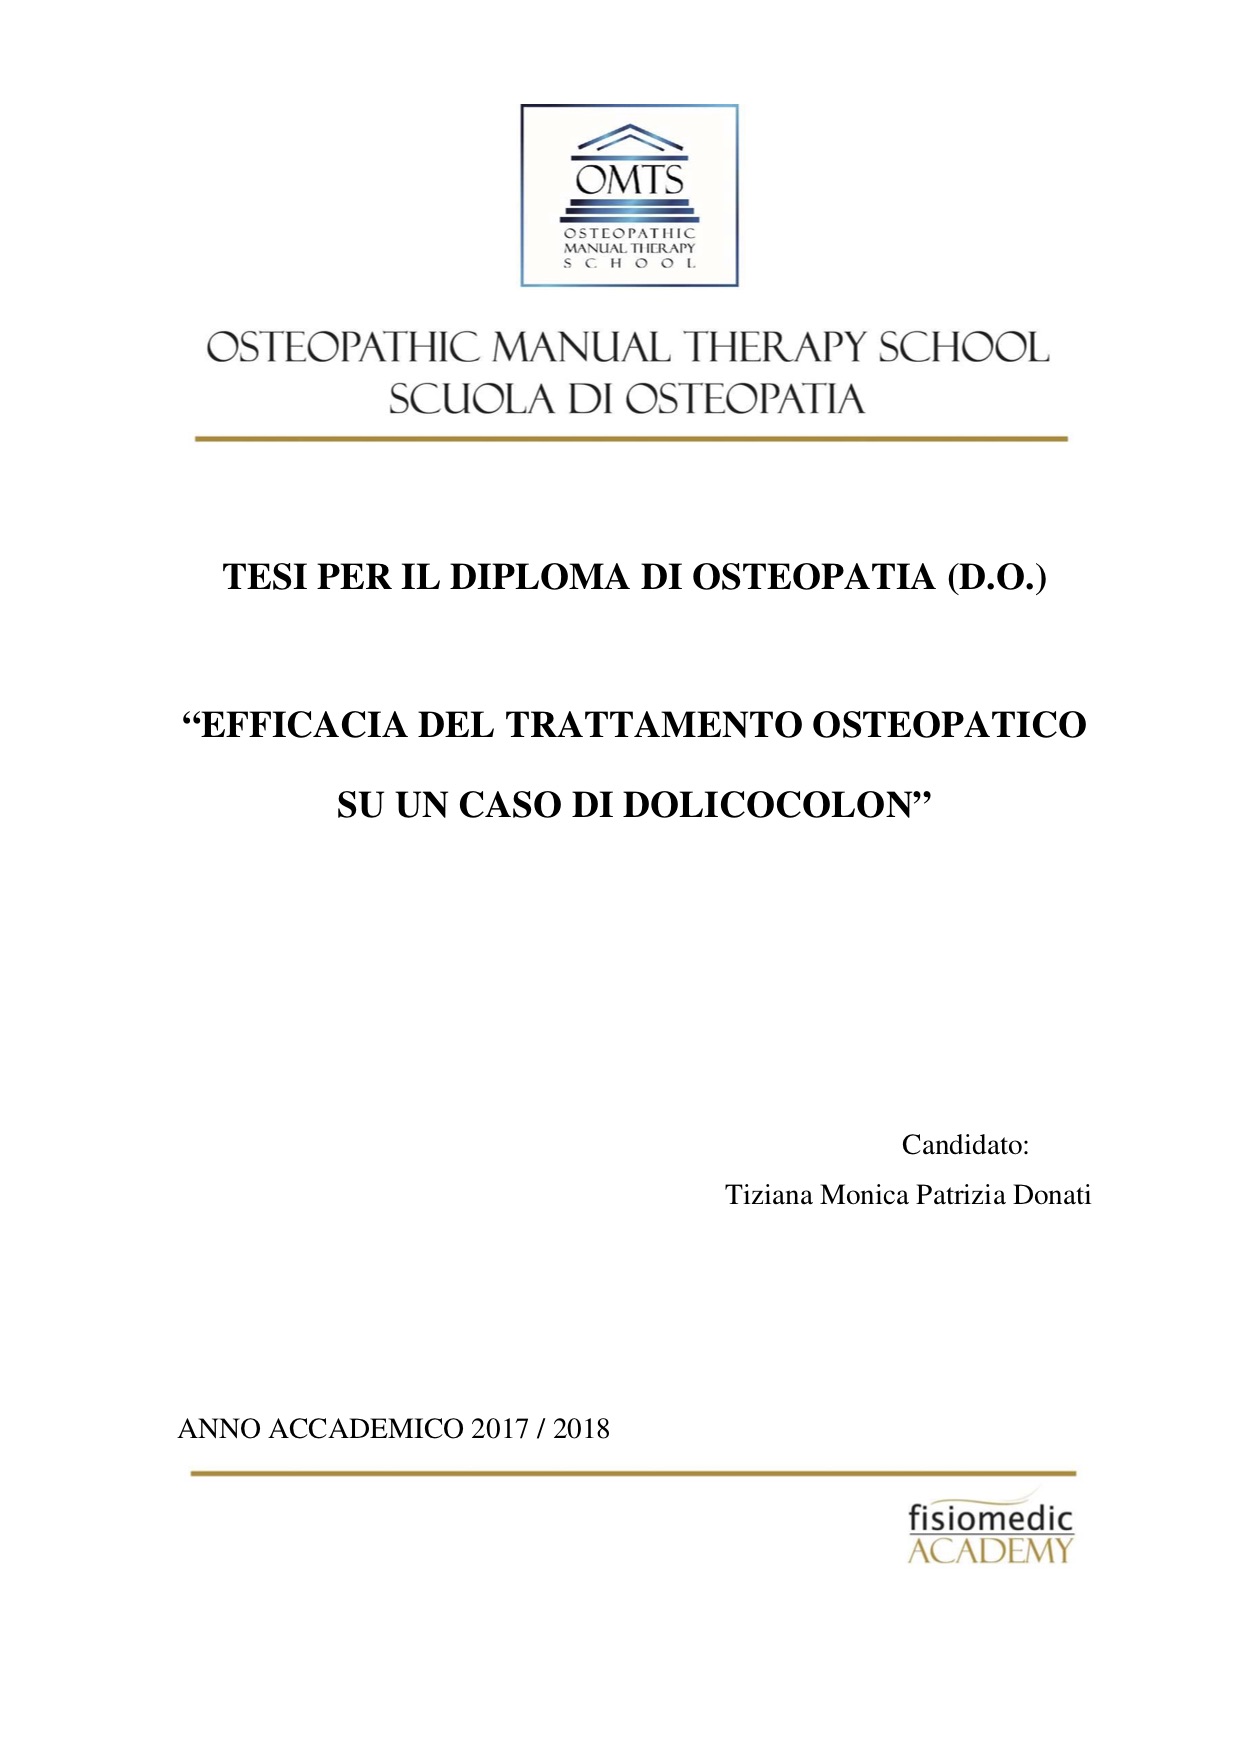 Tiziana Donati Tesi Diploma Osteopatia 2018